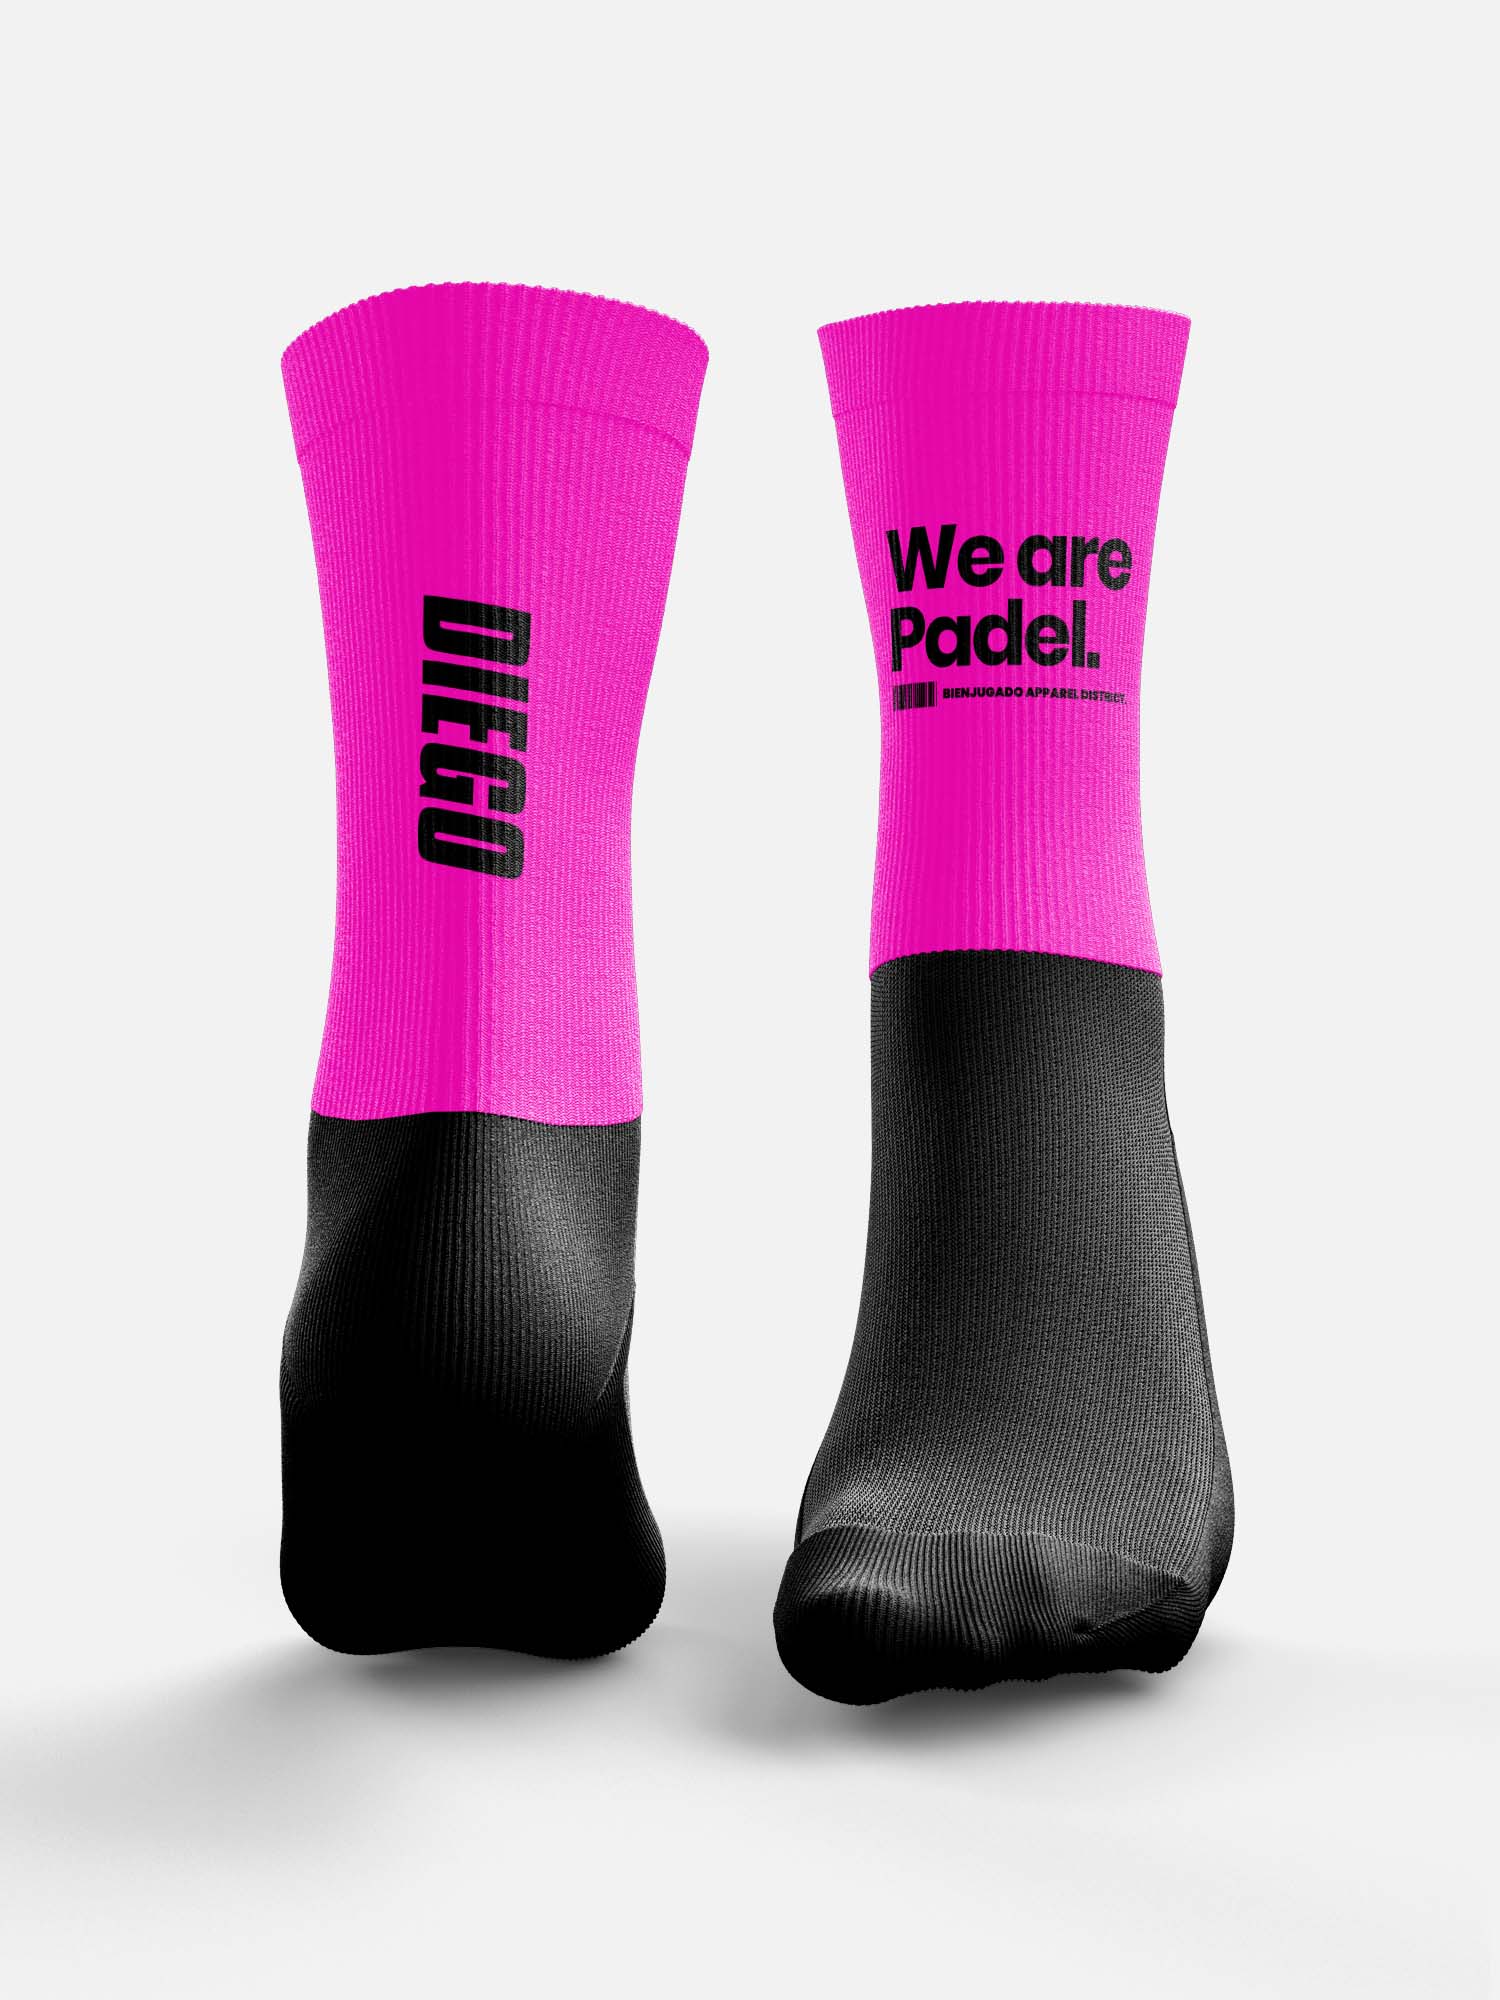 Padel Fun Socks - We Are Padel